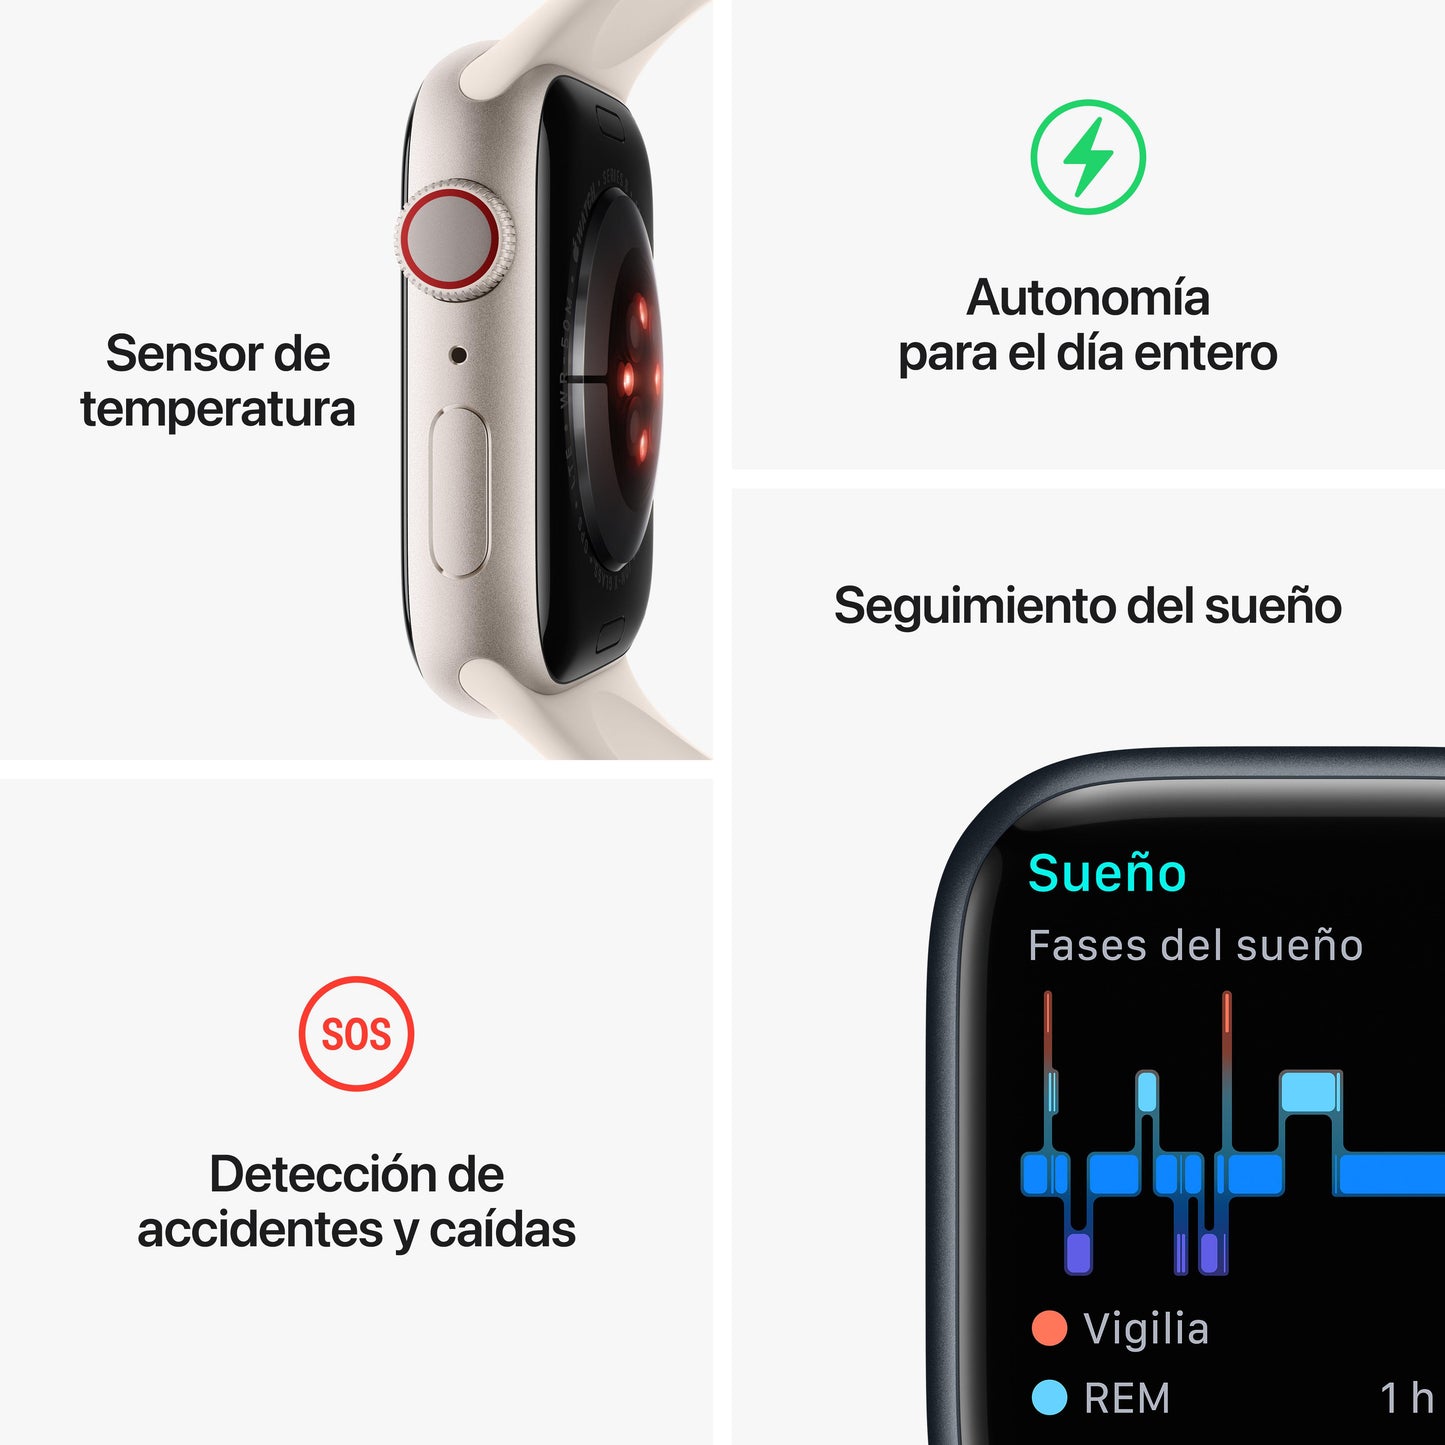 Apple Watch Series 8 (GPS + Cellular) - Caja de acero inoxidable en grafito de 45 mm - Correa deportiva en color medianoche - Talla única